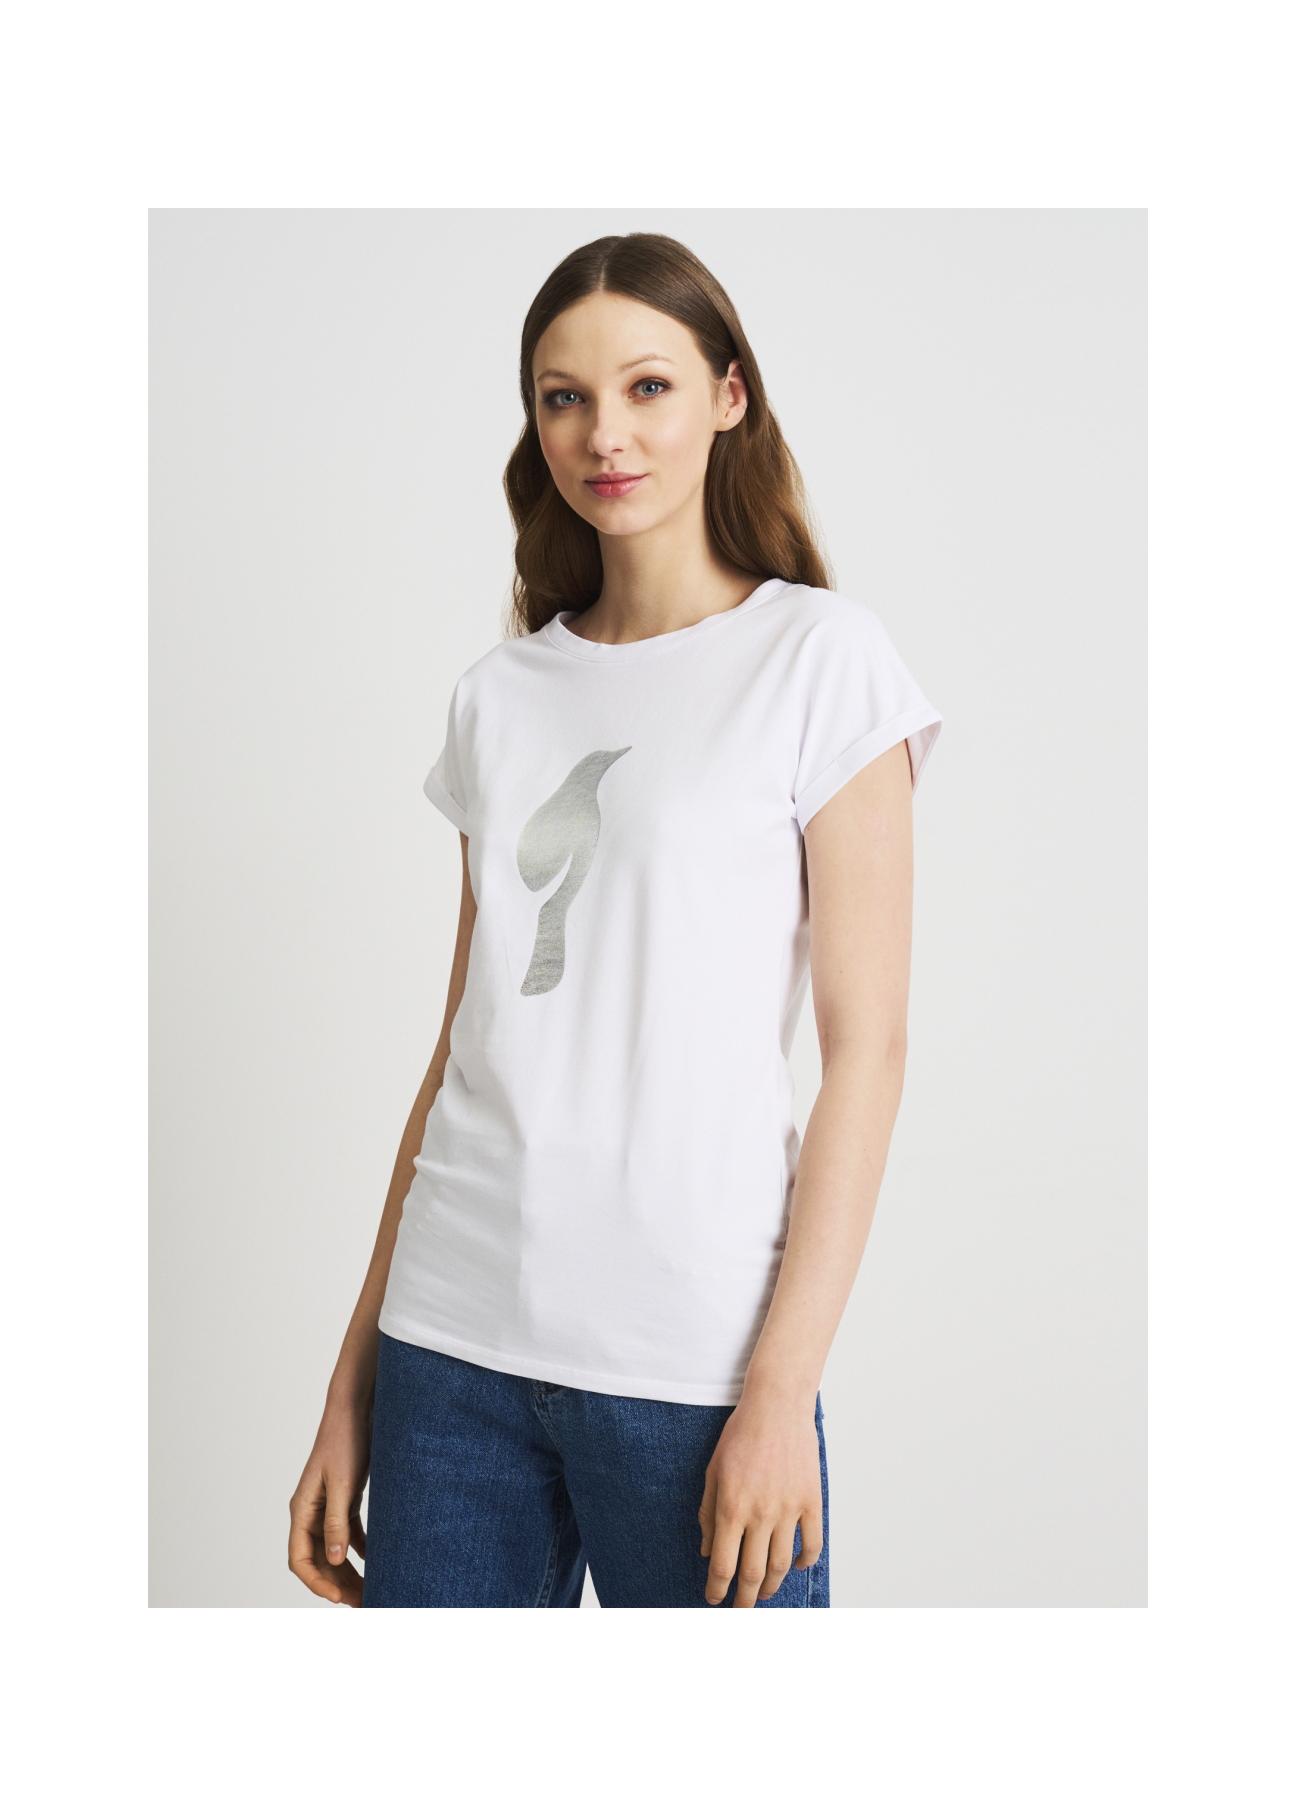 Biały T-shirt damski z wilgą TSHDT-0097-11(W22)-01